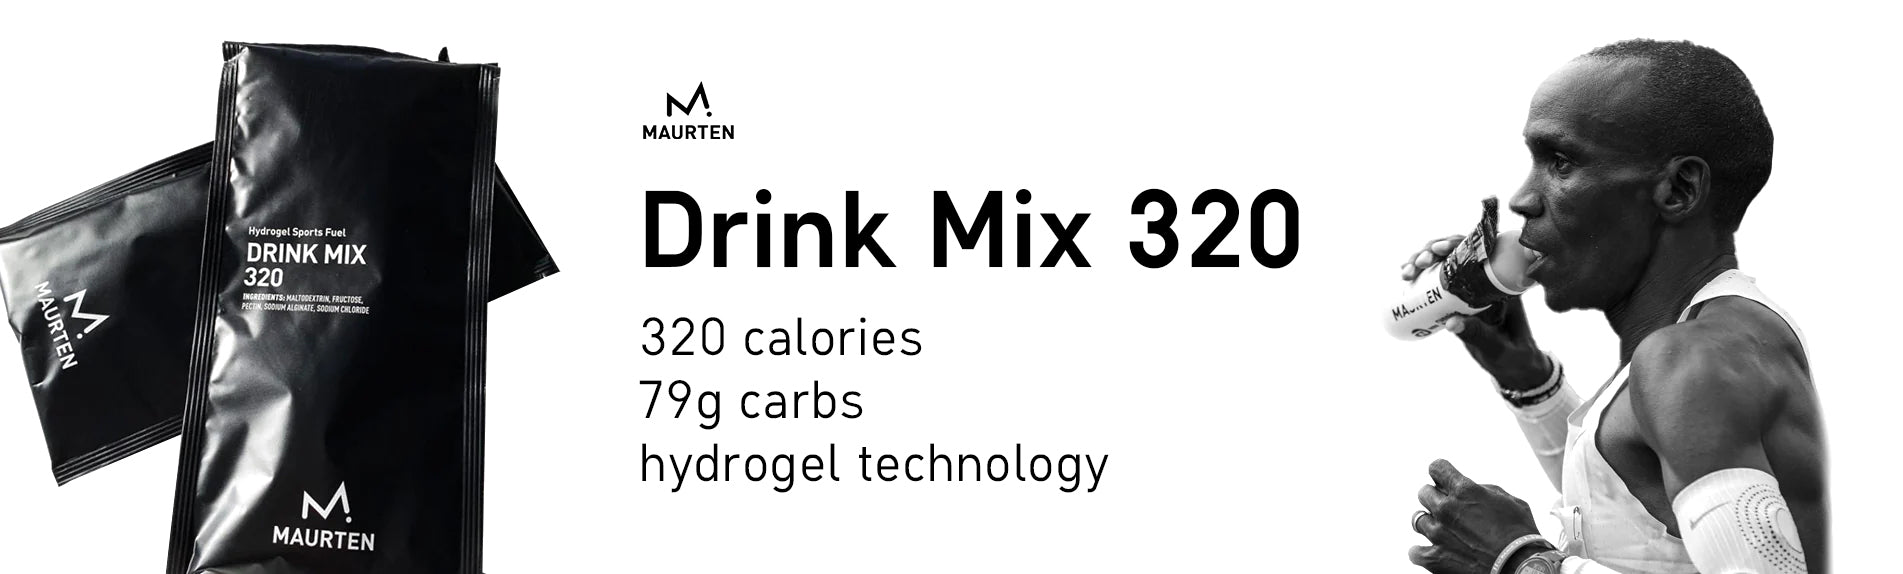 Drink Mix 320 Maurten